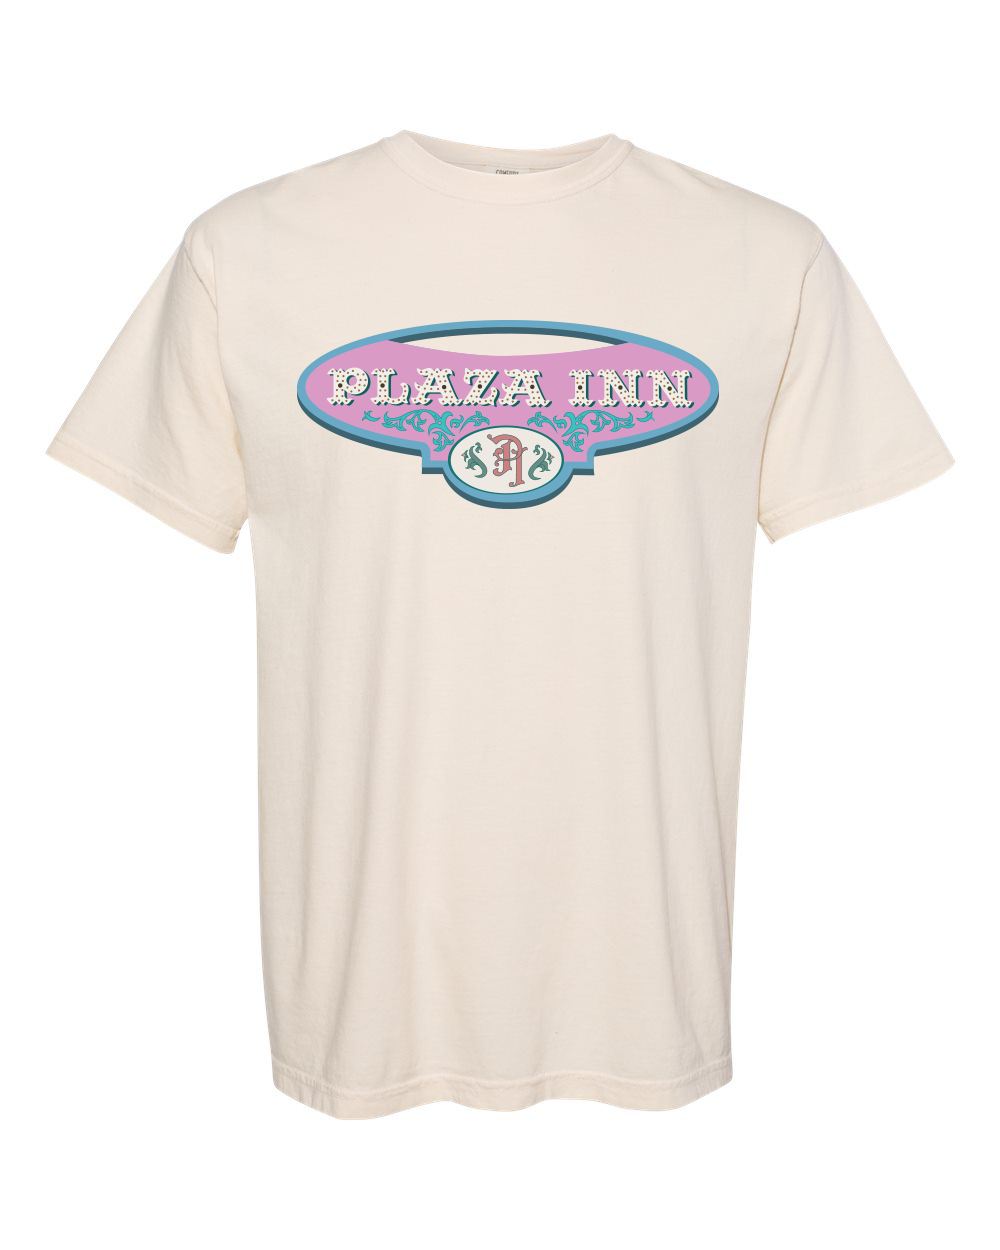 Plaza Inn unisex short sleeve t-shirt